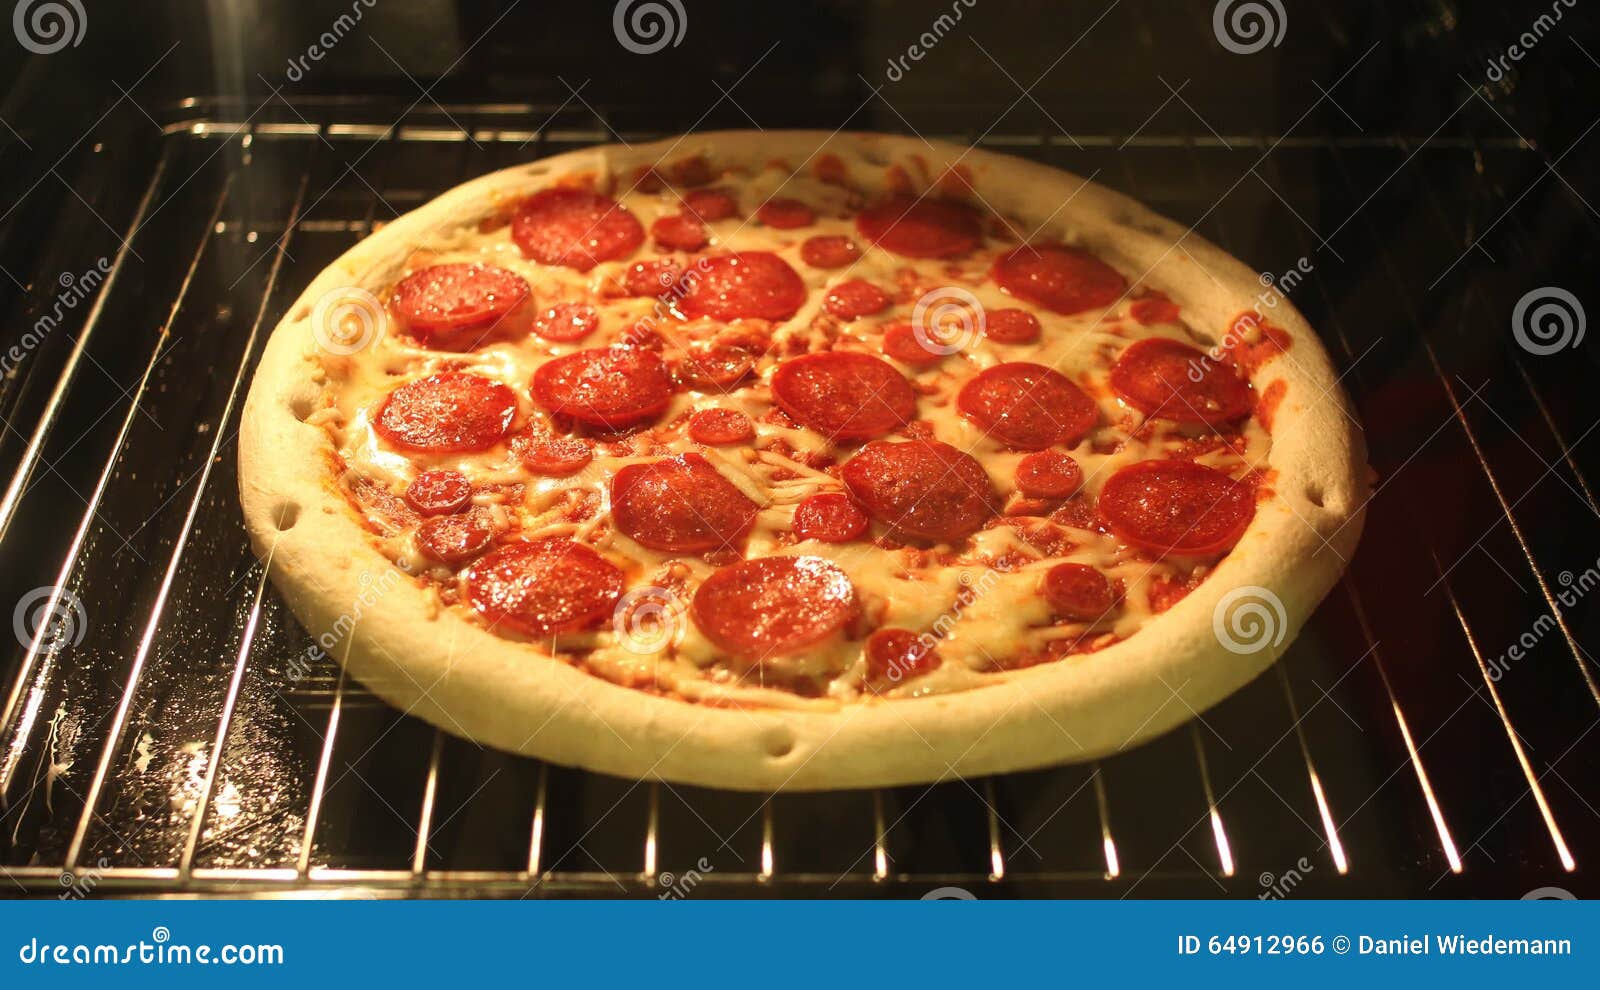 можно ли печь на фольге в духовке пиццу фото 75